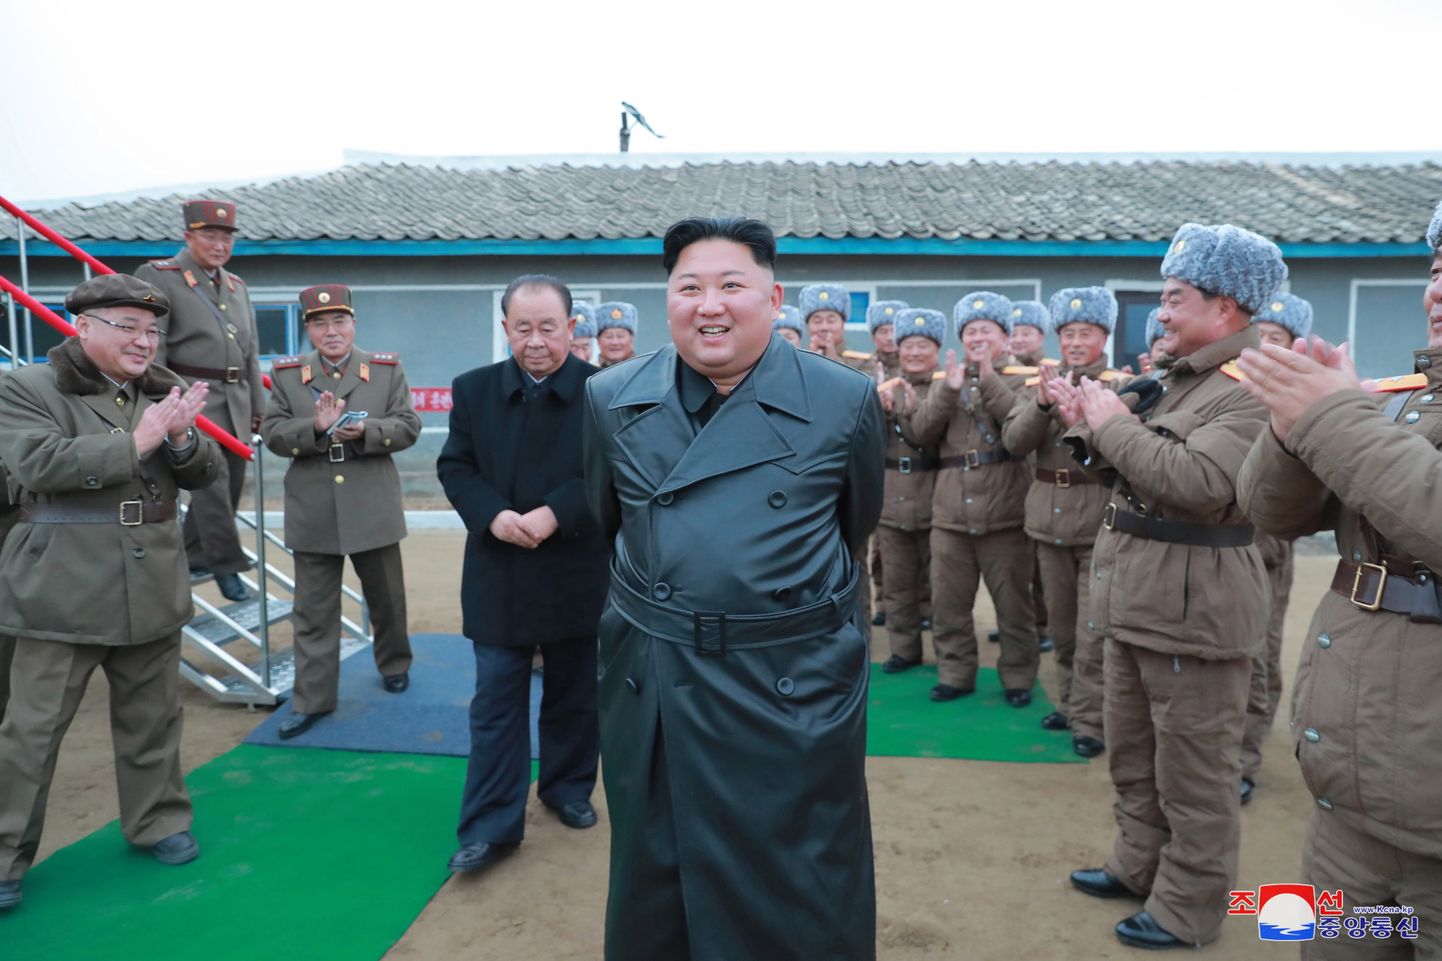 Põhja-Korea liider Kim Jong-un saabub raketikatsetust jälgima.